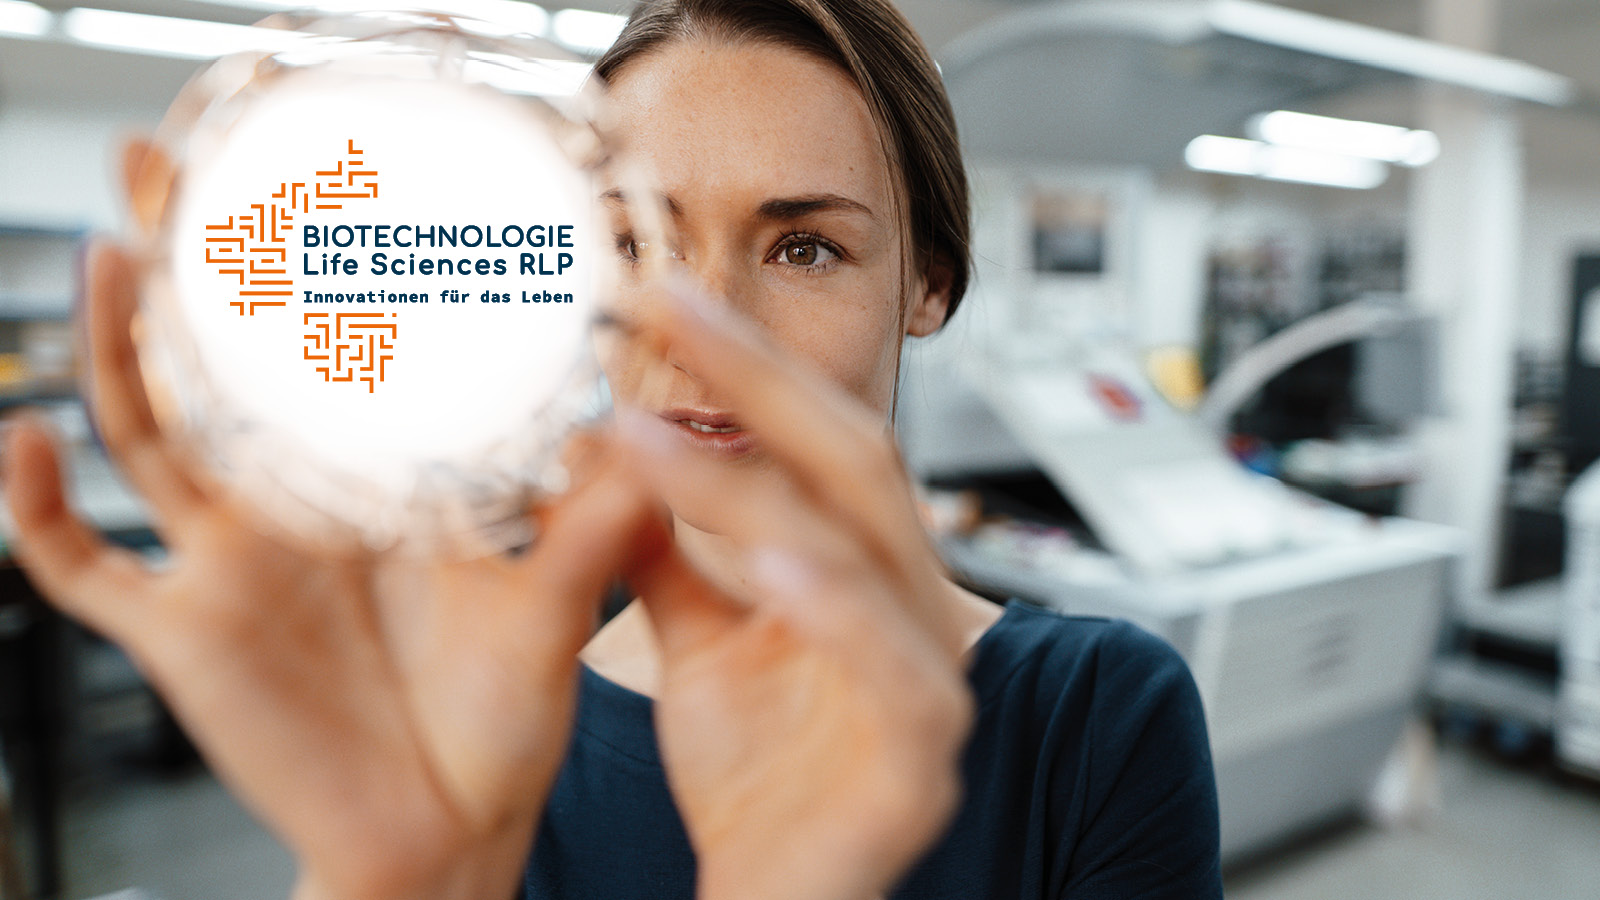 [Translate to English:] Frau hält eine Glaskugel, die das Logo "Biotechnologie Life Sciences RLP - Innovation fürs Leben" trägt